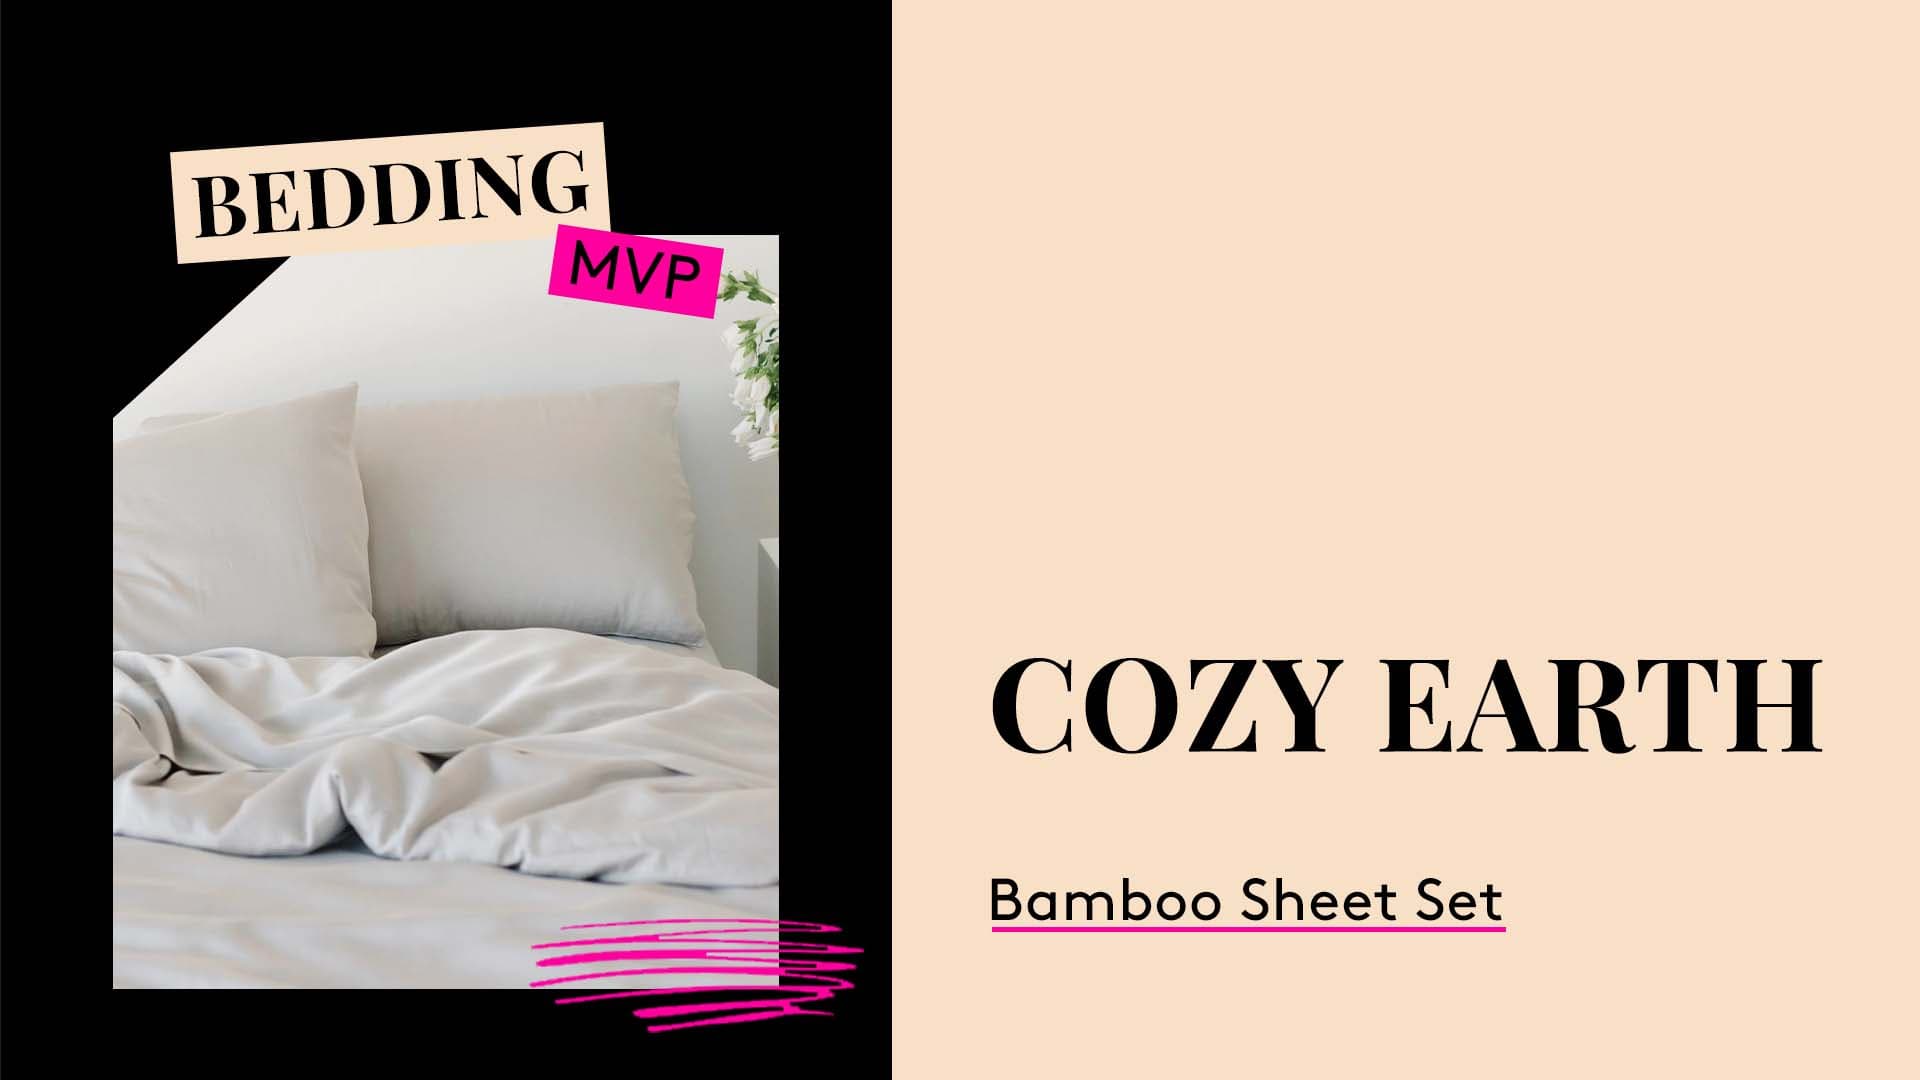 Bedding MVP. Cozy Earth Bamboo Sheet Set.